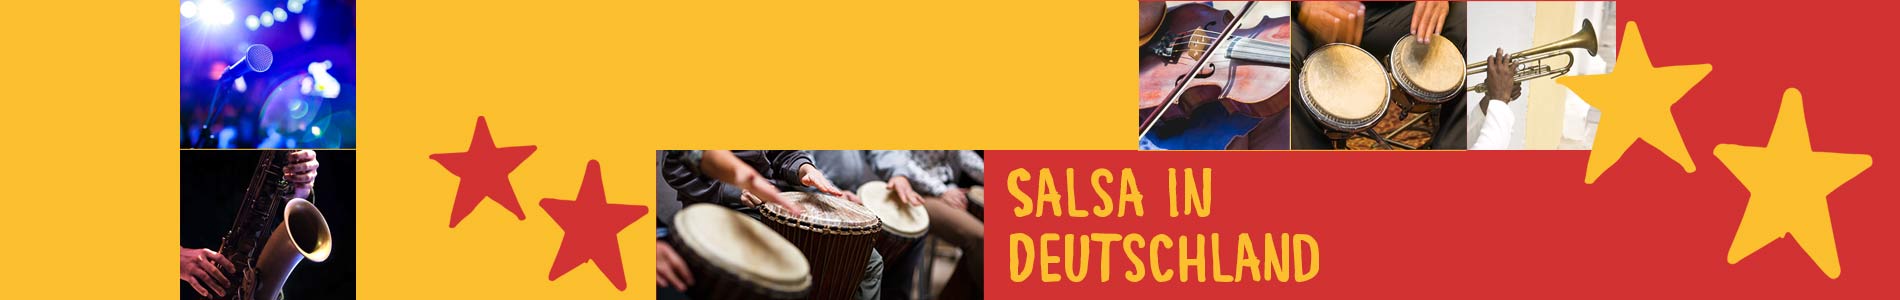 Salsa in Brackel – Salsa lernen und tanzen, Tanzkurse, Partys, Veranstaltungen